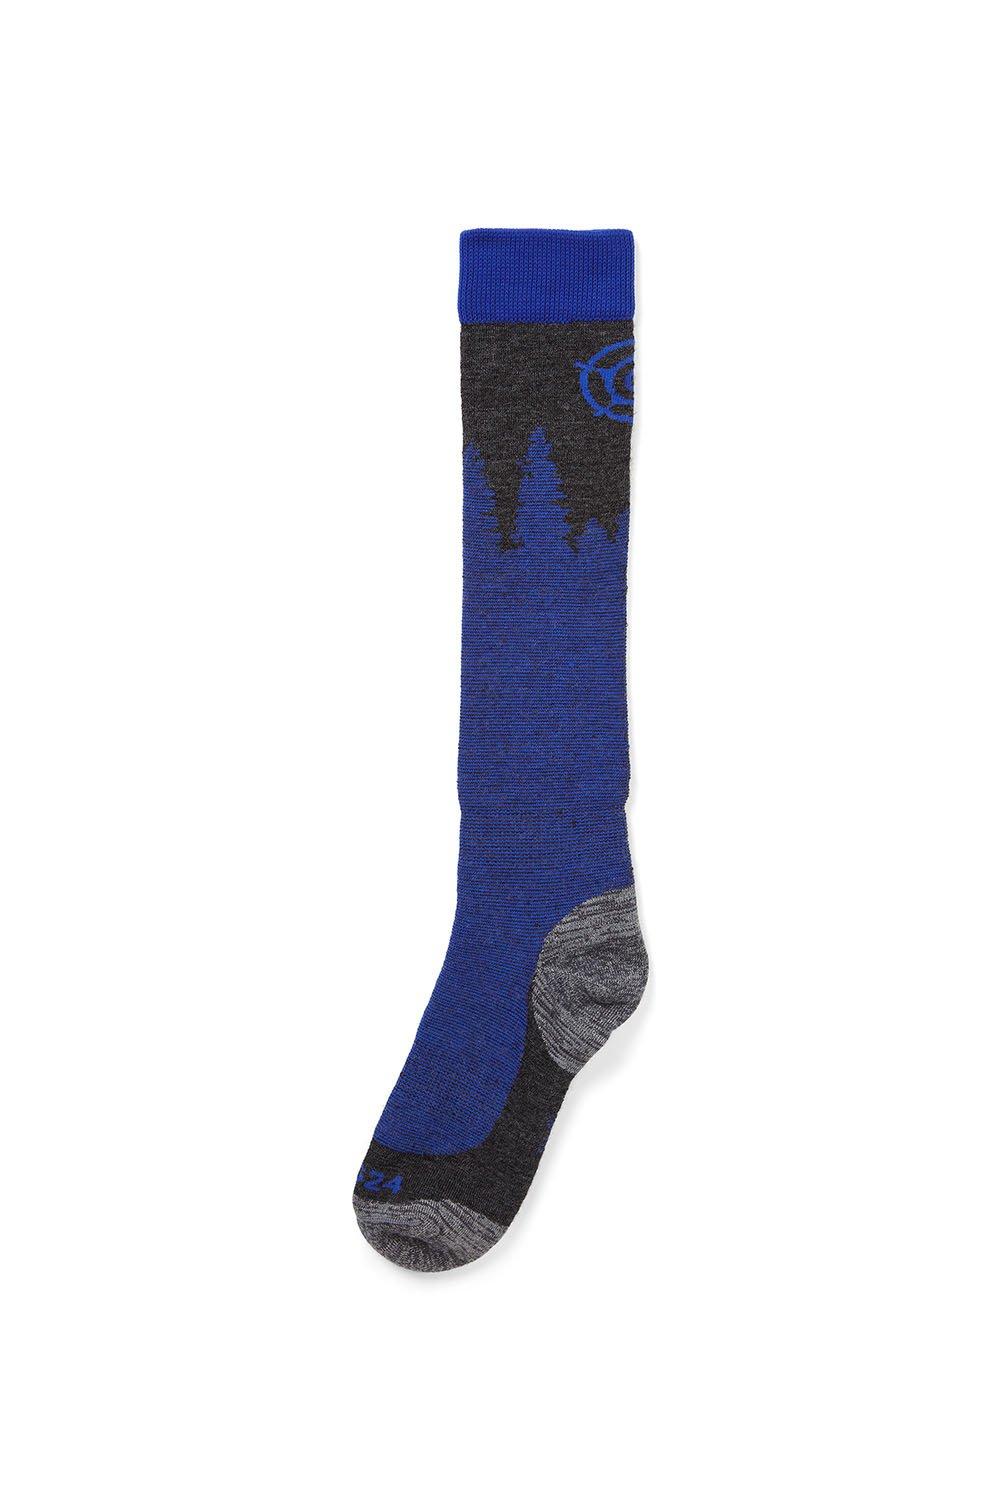 'Pine' Merino Ski Socks